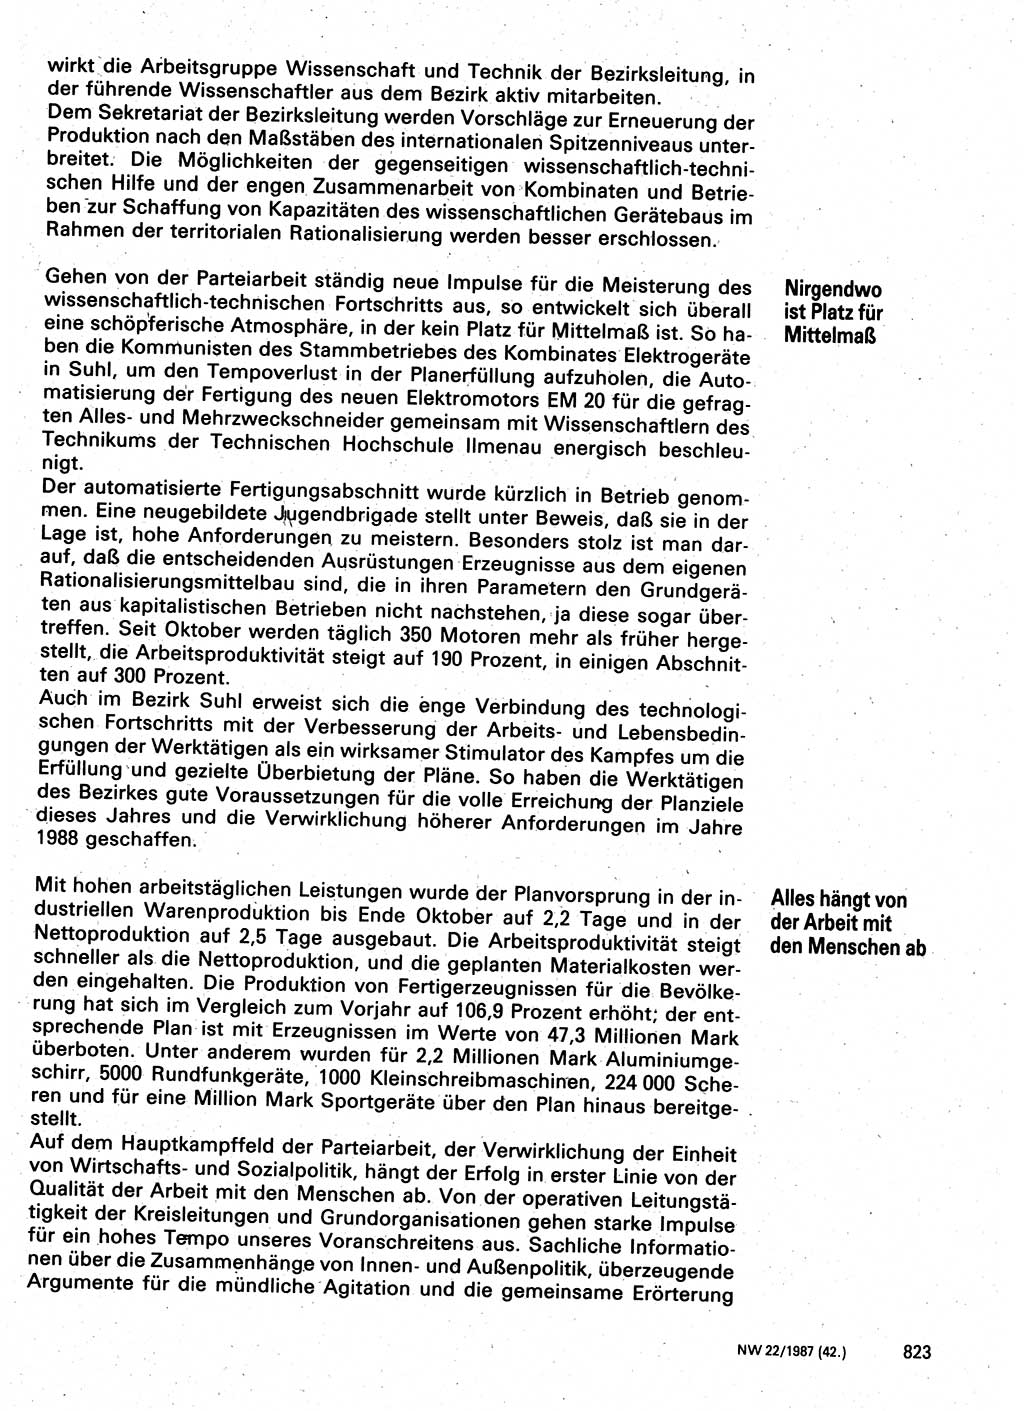 Neuer Weg (NW), Organ des Zentralkomitees (ZK) der SED (Sozialistische Einheitspartei Deutschlands) für Fragen des Parteilebens, 42. Jahrgang [Deutsche Demokratische Republik (DDR)] 1987, Seite 823 (NW ZK SED DDR 1987, S. 823)